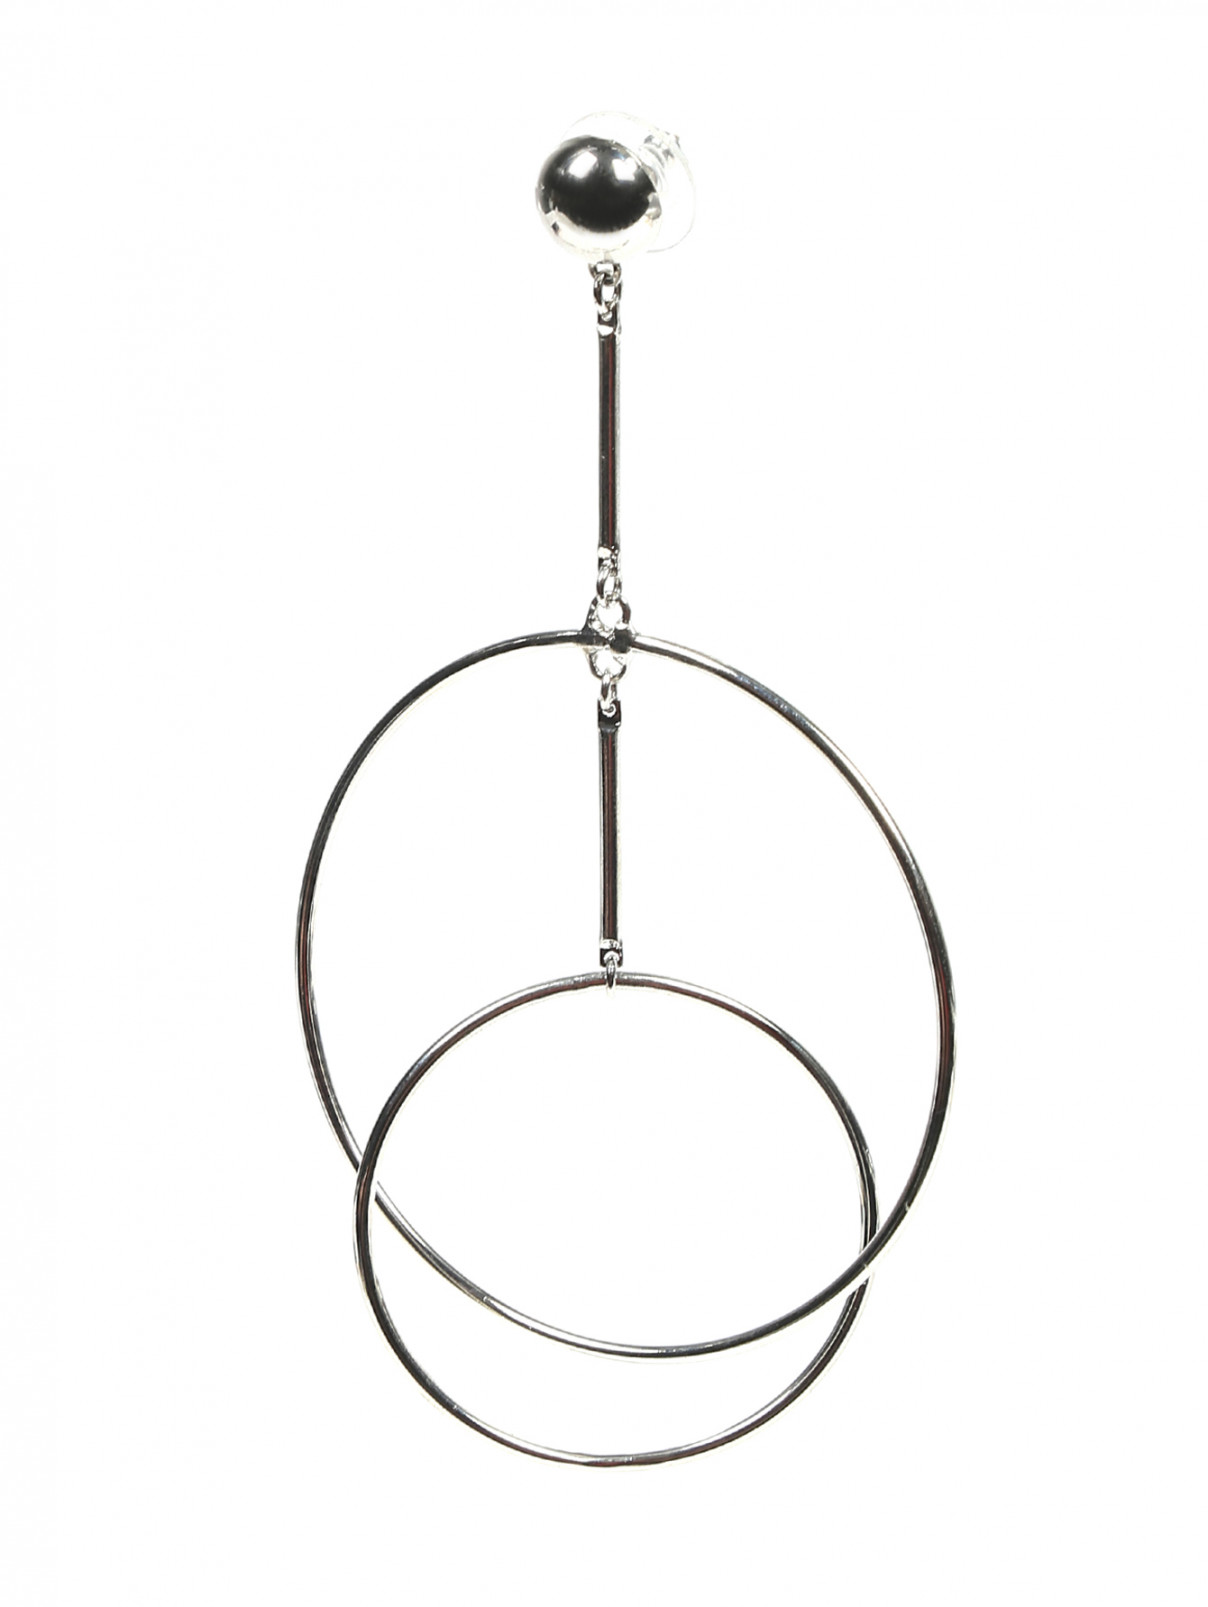 Серьги из металла с кольцами Lkdesign  –  Обтравка1  – Цвет:  Серый